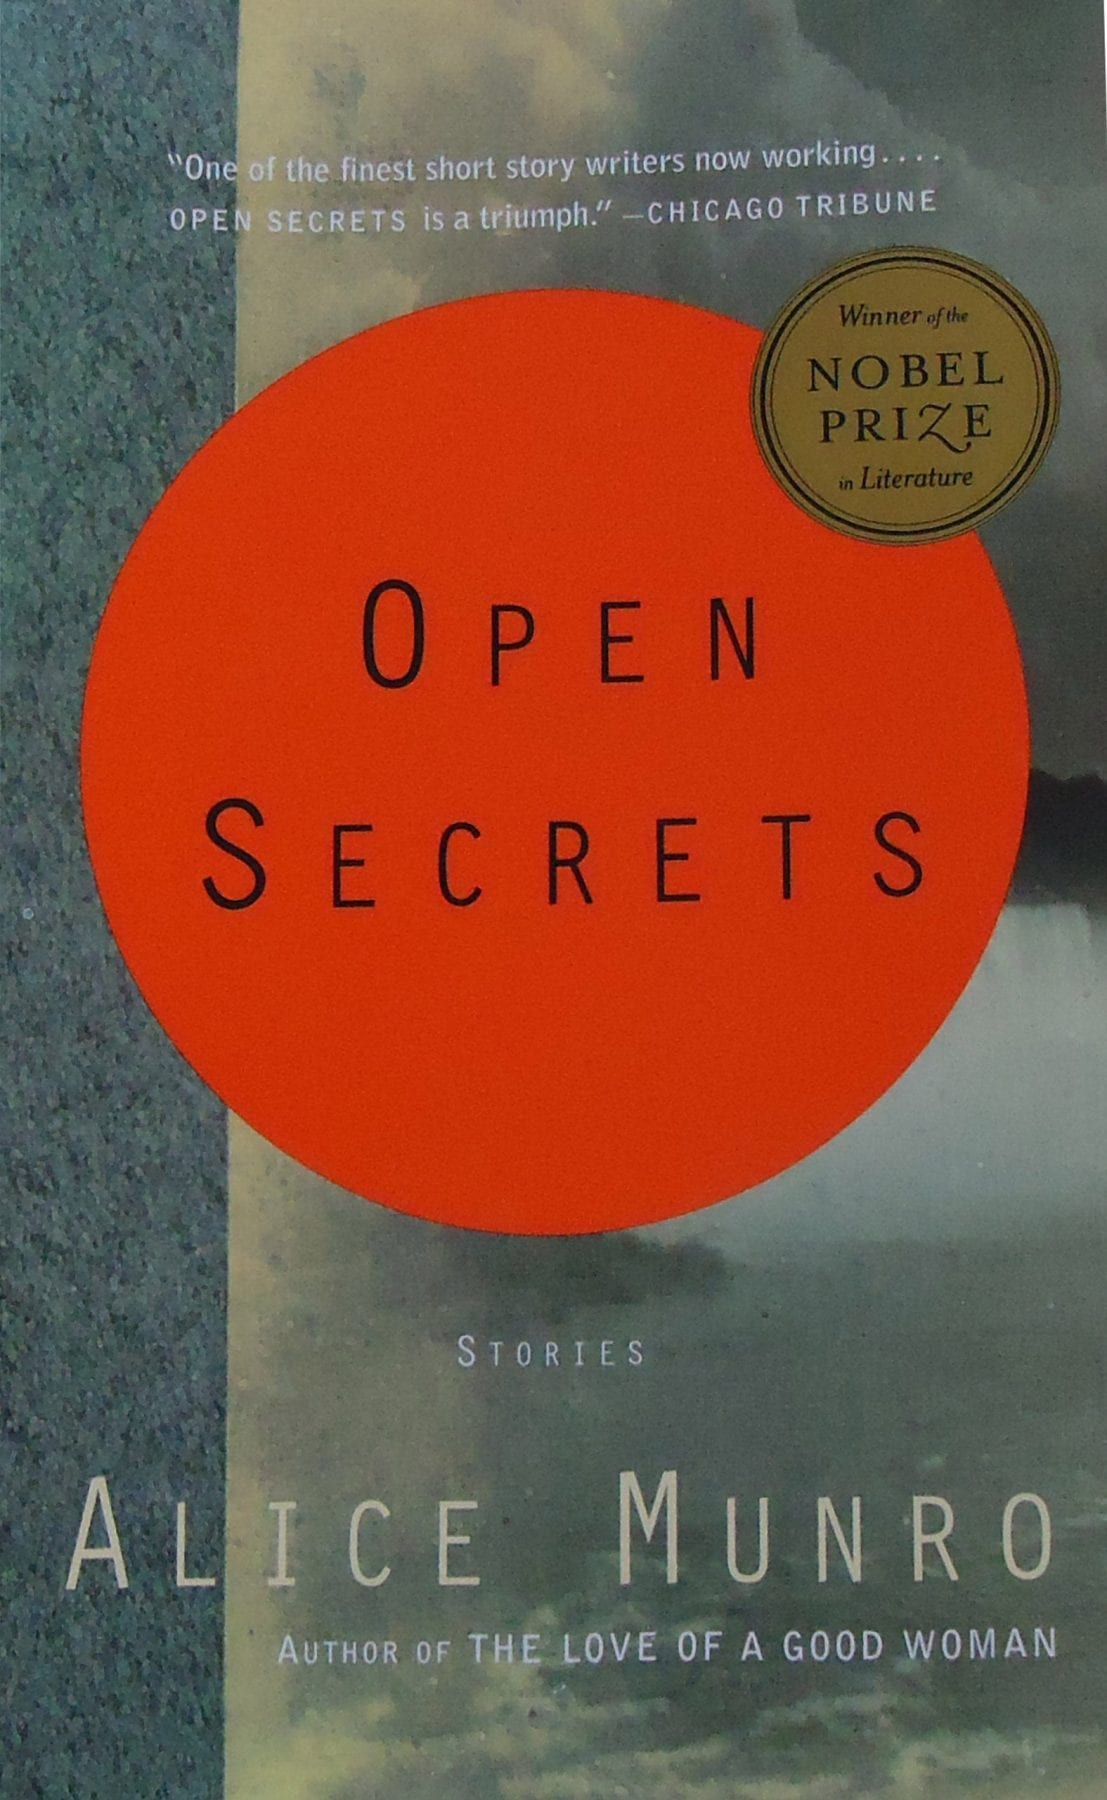 Open Secrets by Alice Munro.